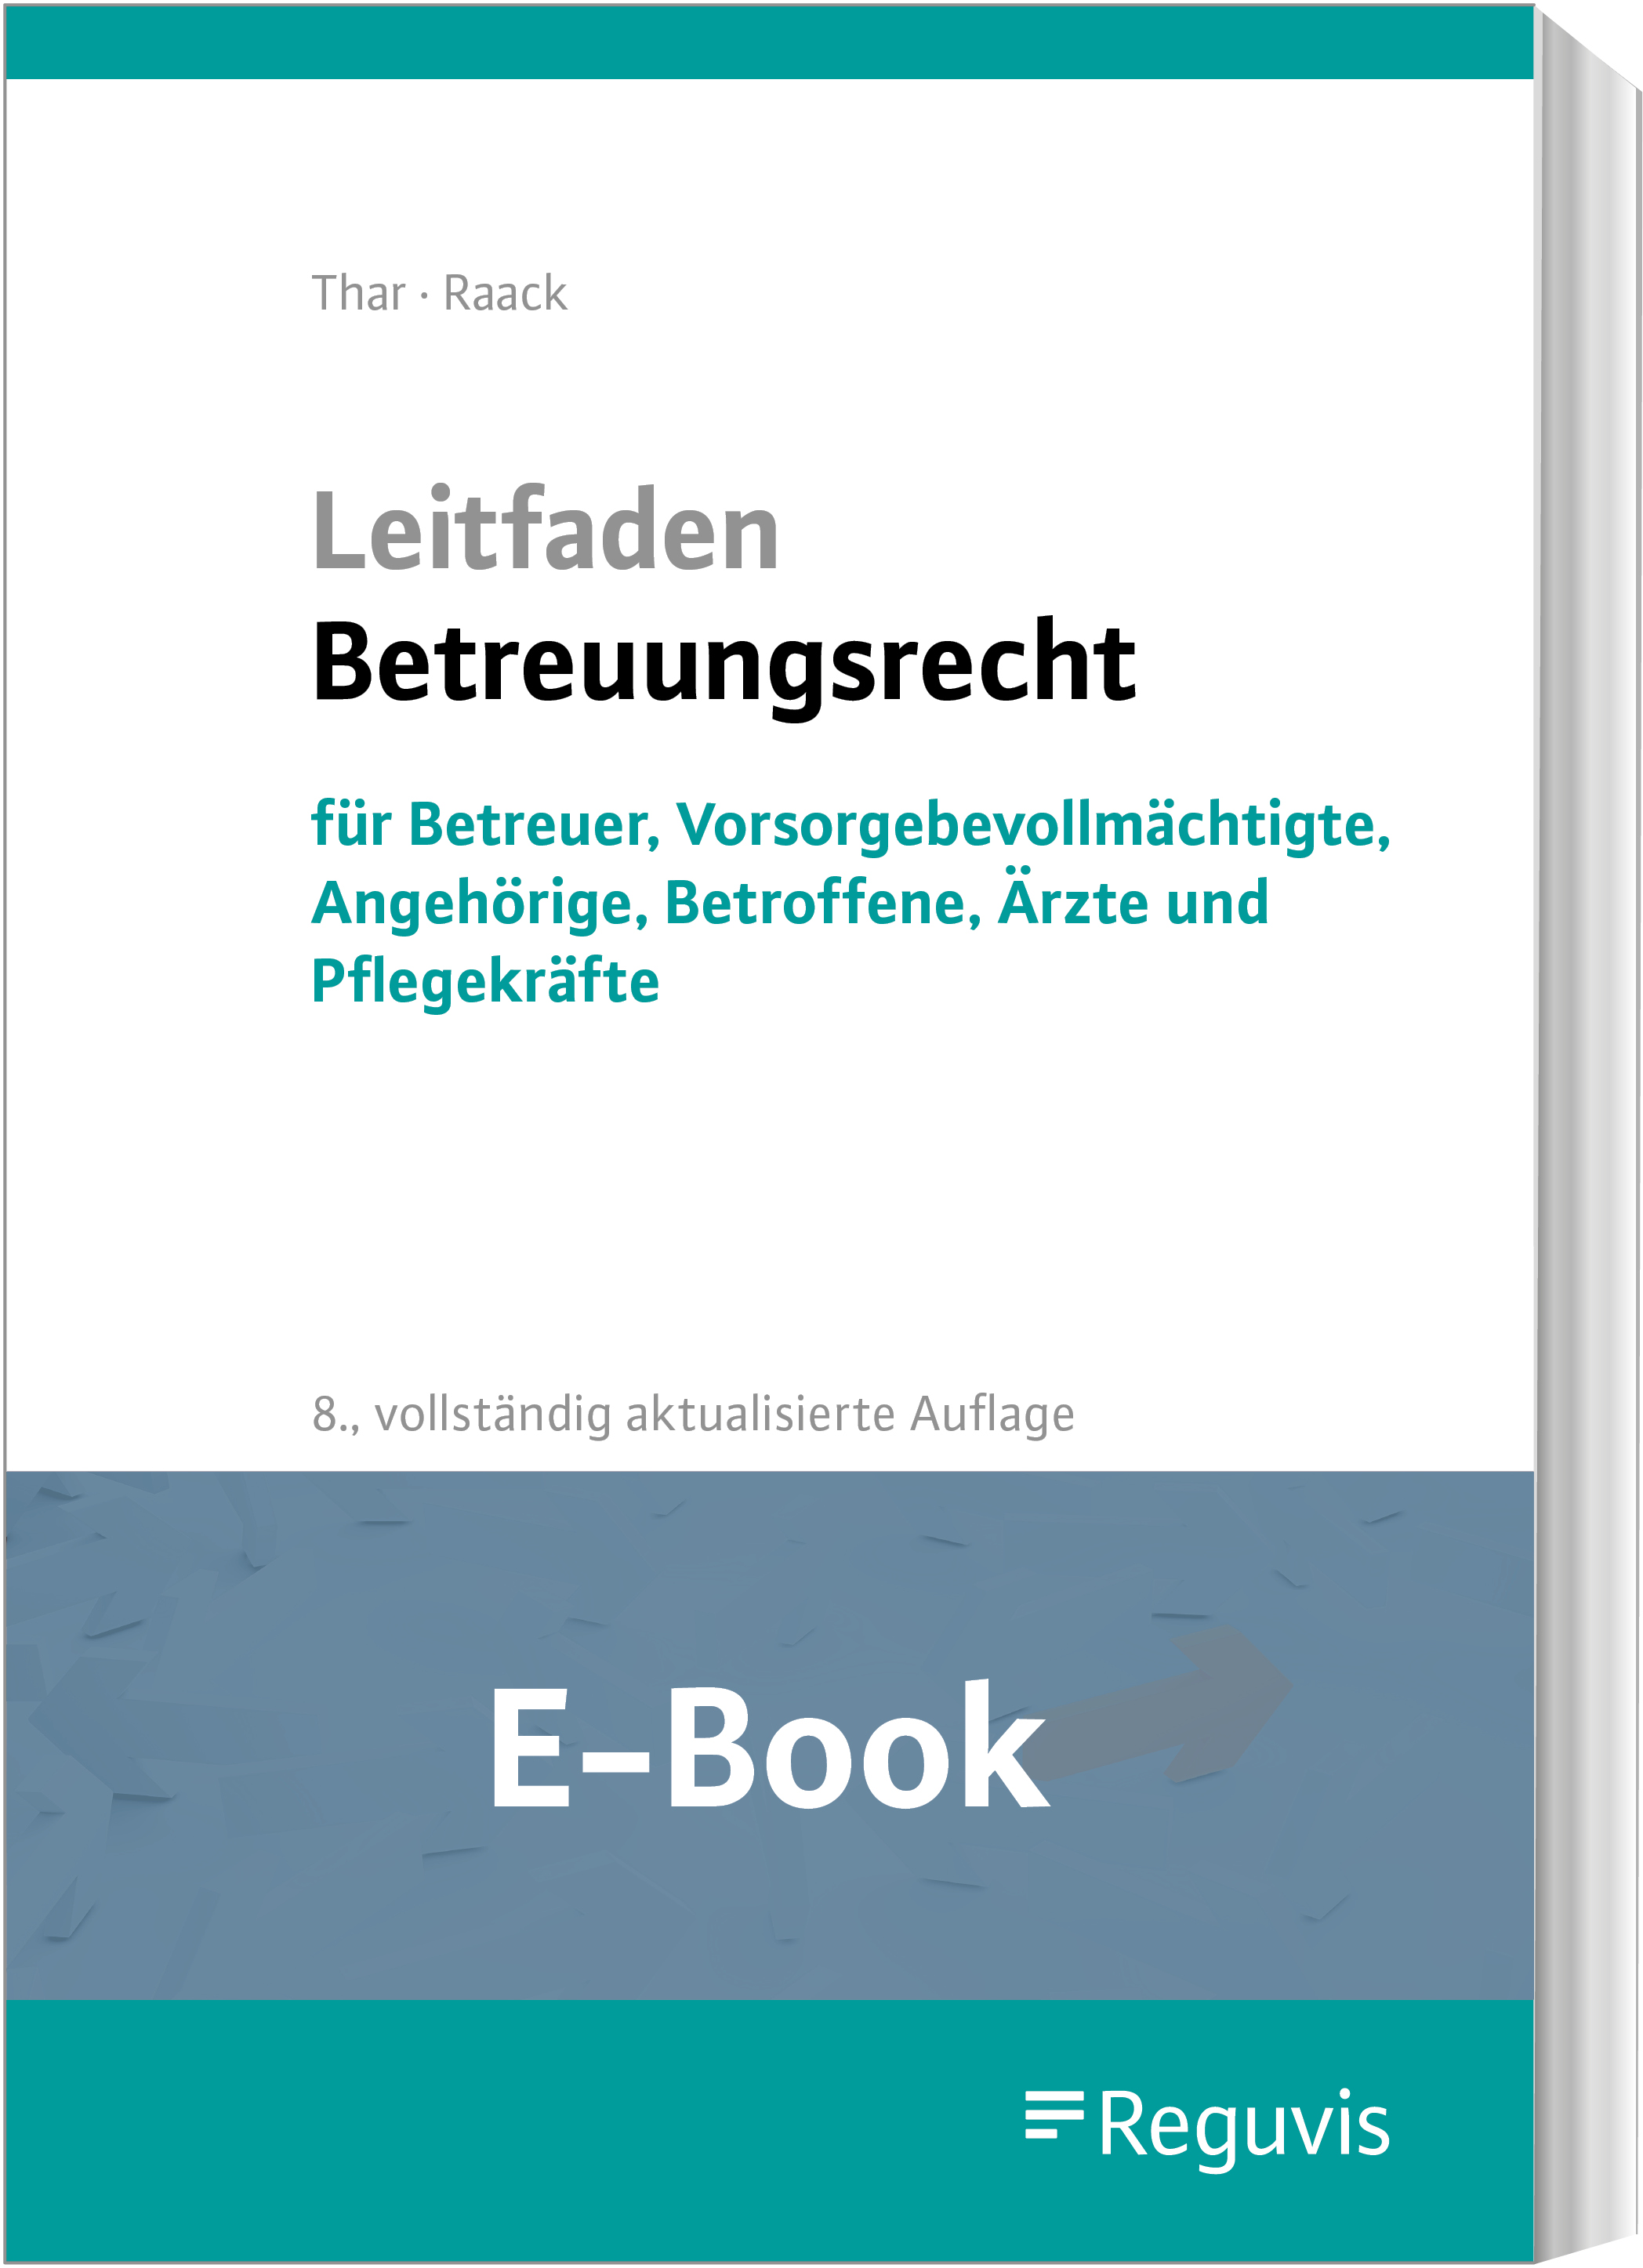 Thar/Raack; Leitfaden Betreuungsrecht E-Book